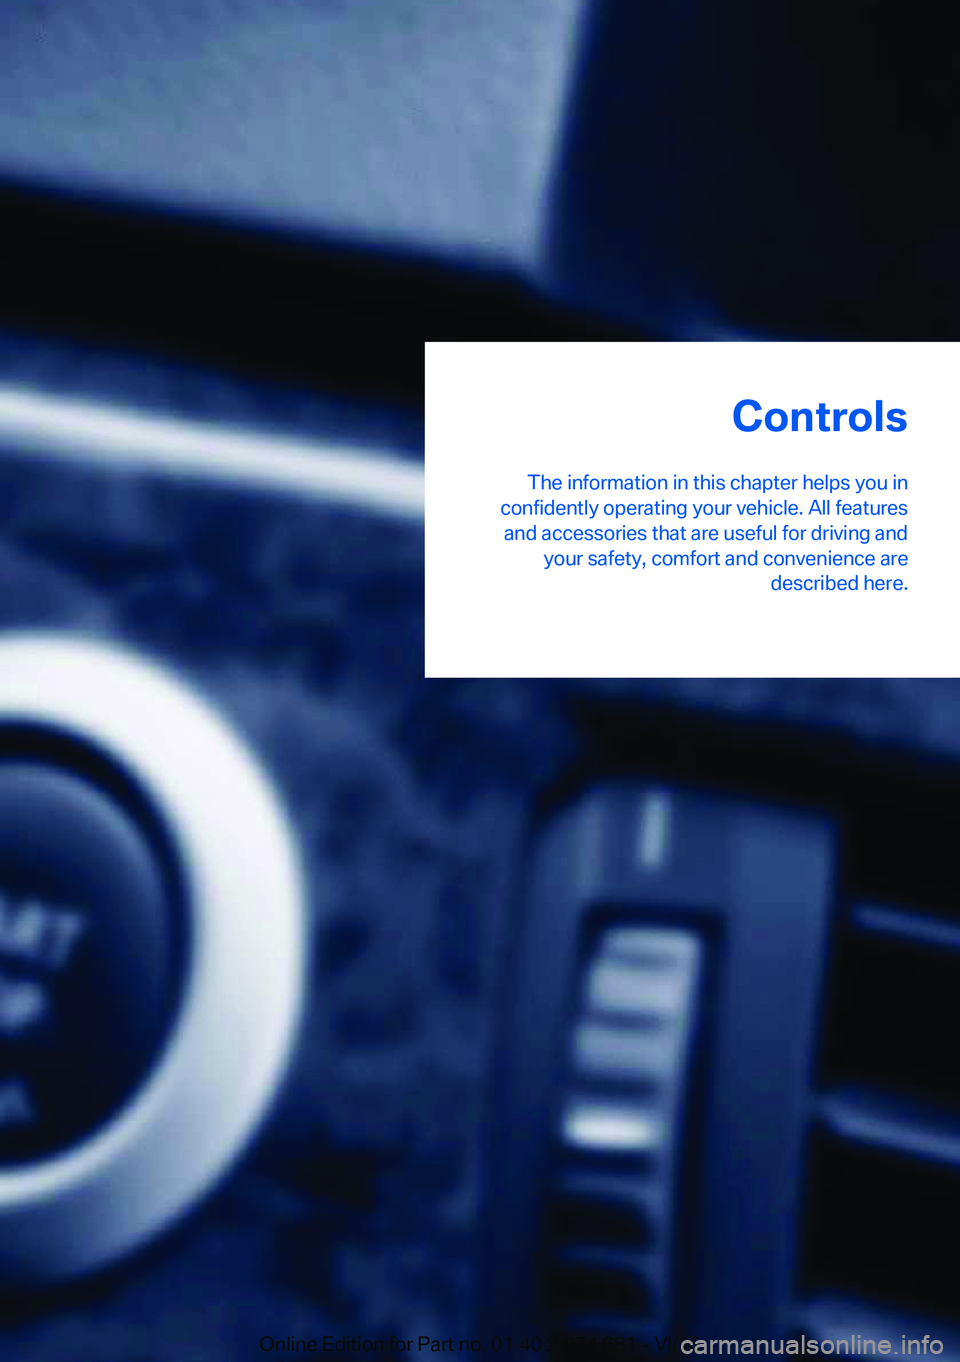 BMW M2 2017 Owners Guide �C�o�n�t�r�o�l�s
�T�h�e� �i�n�f�o�r�m�a�t�i�o�n� �i�n� �t�h�i�s� �c�h�a�p�t�e�r� �h�e�l�p�s� �y�o�u� �i�n
�c�o�n�f�i�d�e�n�t�l�y� �o�p�e�r�a�t�i�n�g� �y�o�u�r� �v�e�h�i�c�l�e�.� �A�l�l� �f�e�a�t�u�r�e